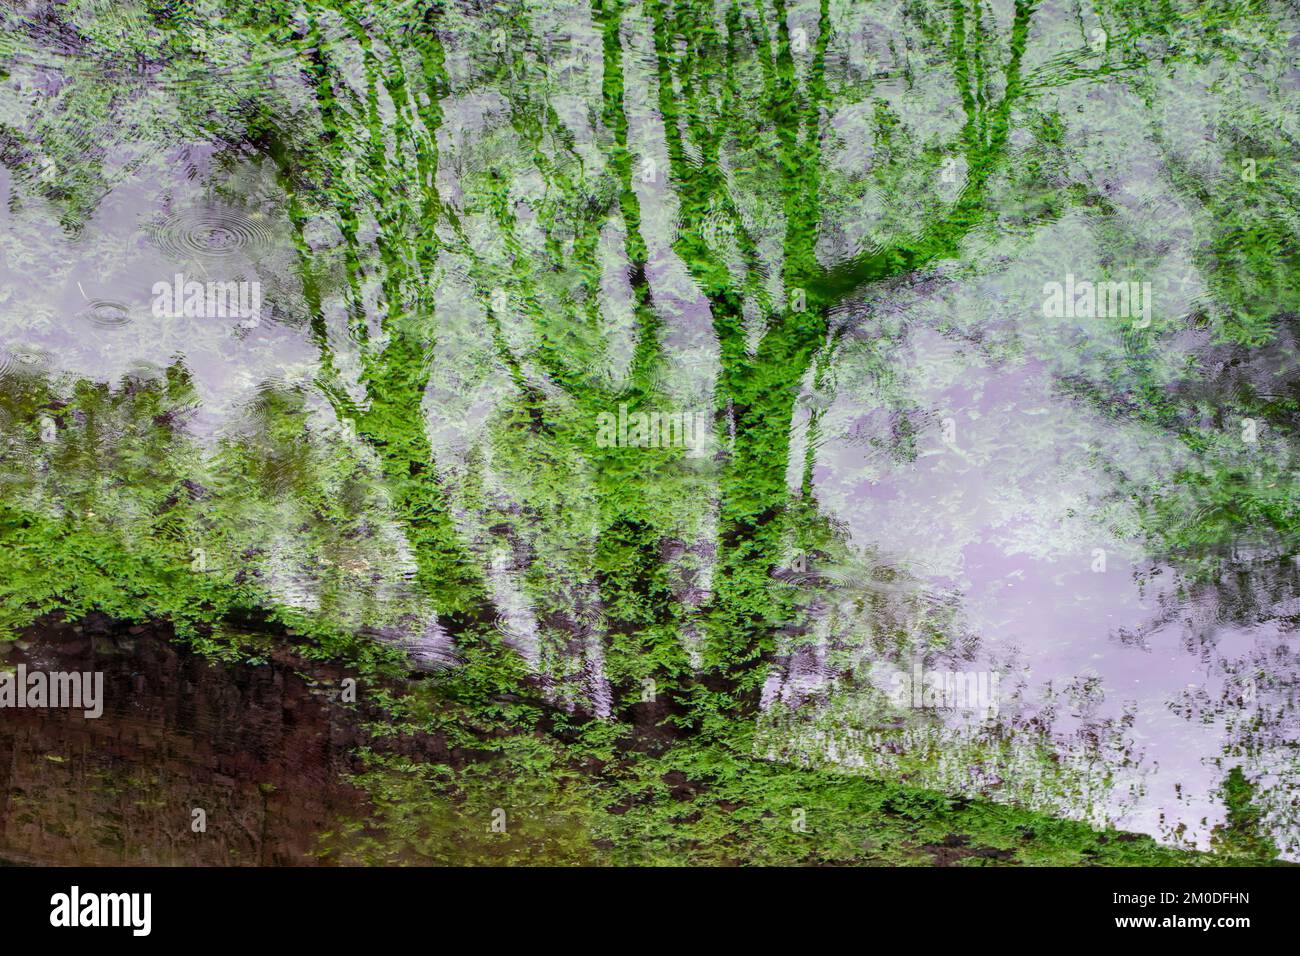 Reflejos de plantas y siluetas de árboles en el agua de un estanque, acuarela natural Stock Photo